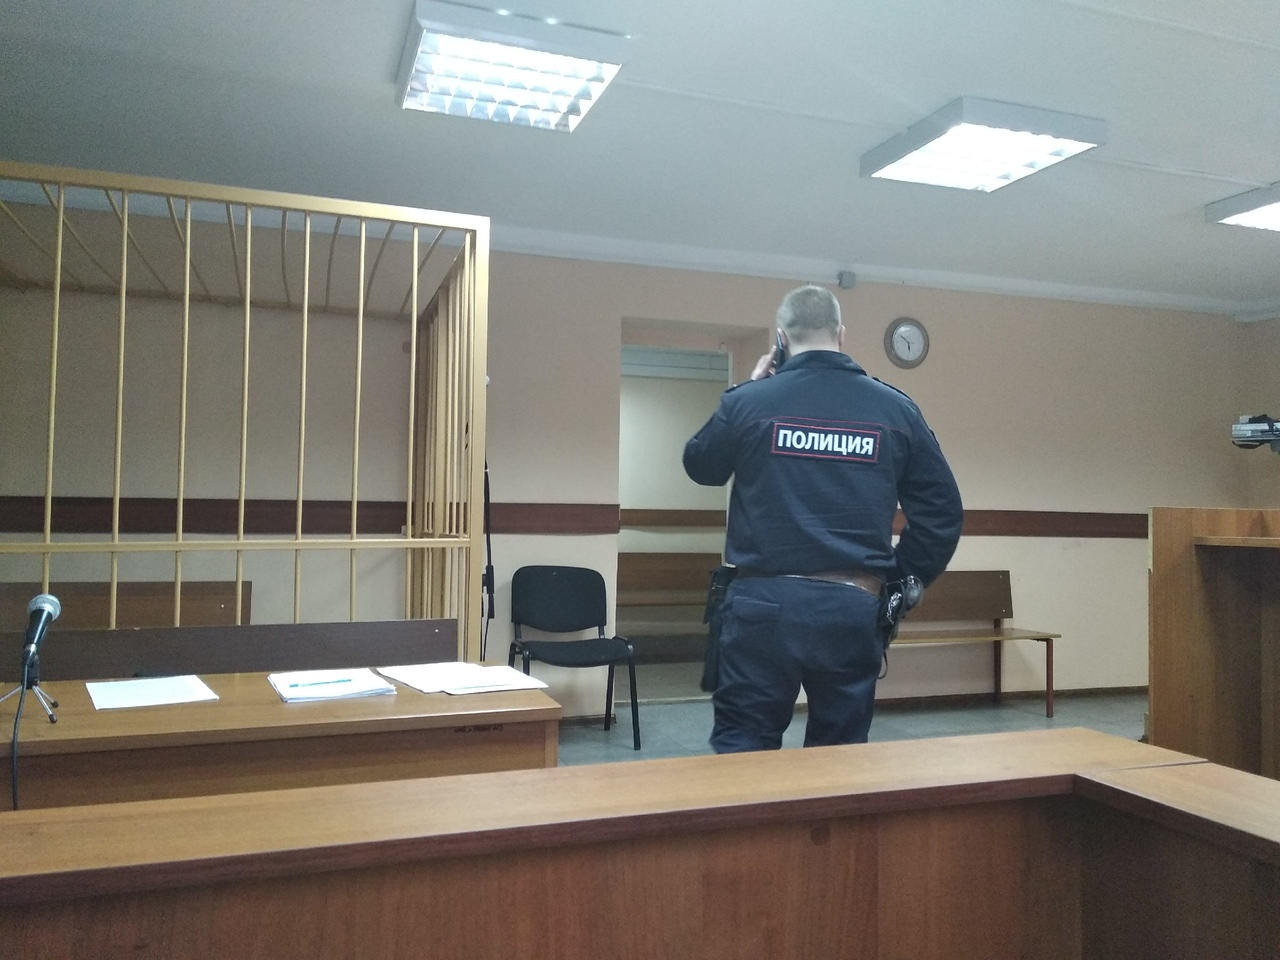 Гнался за продавцом с деревянной битой: подробности скандала в магазине Ярославля